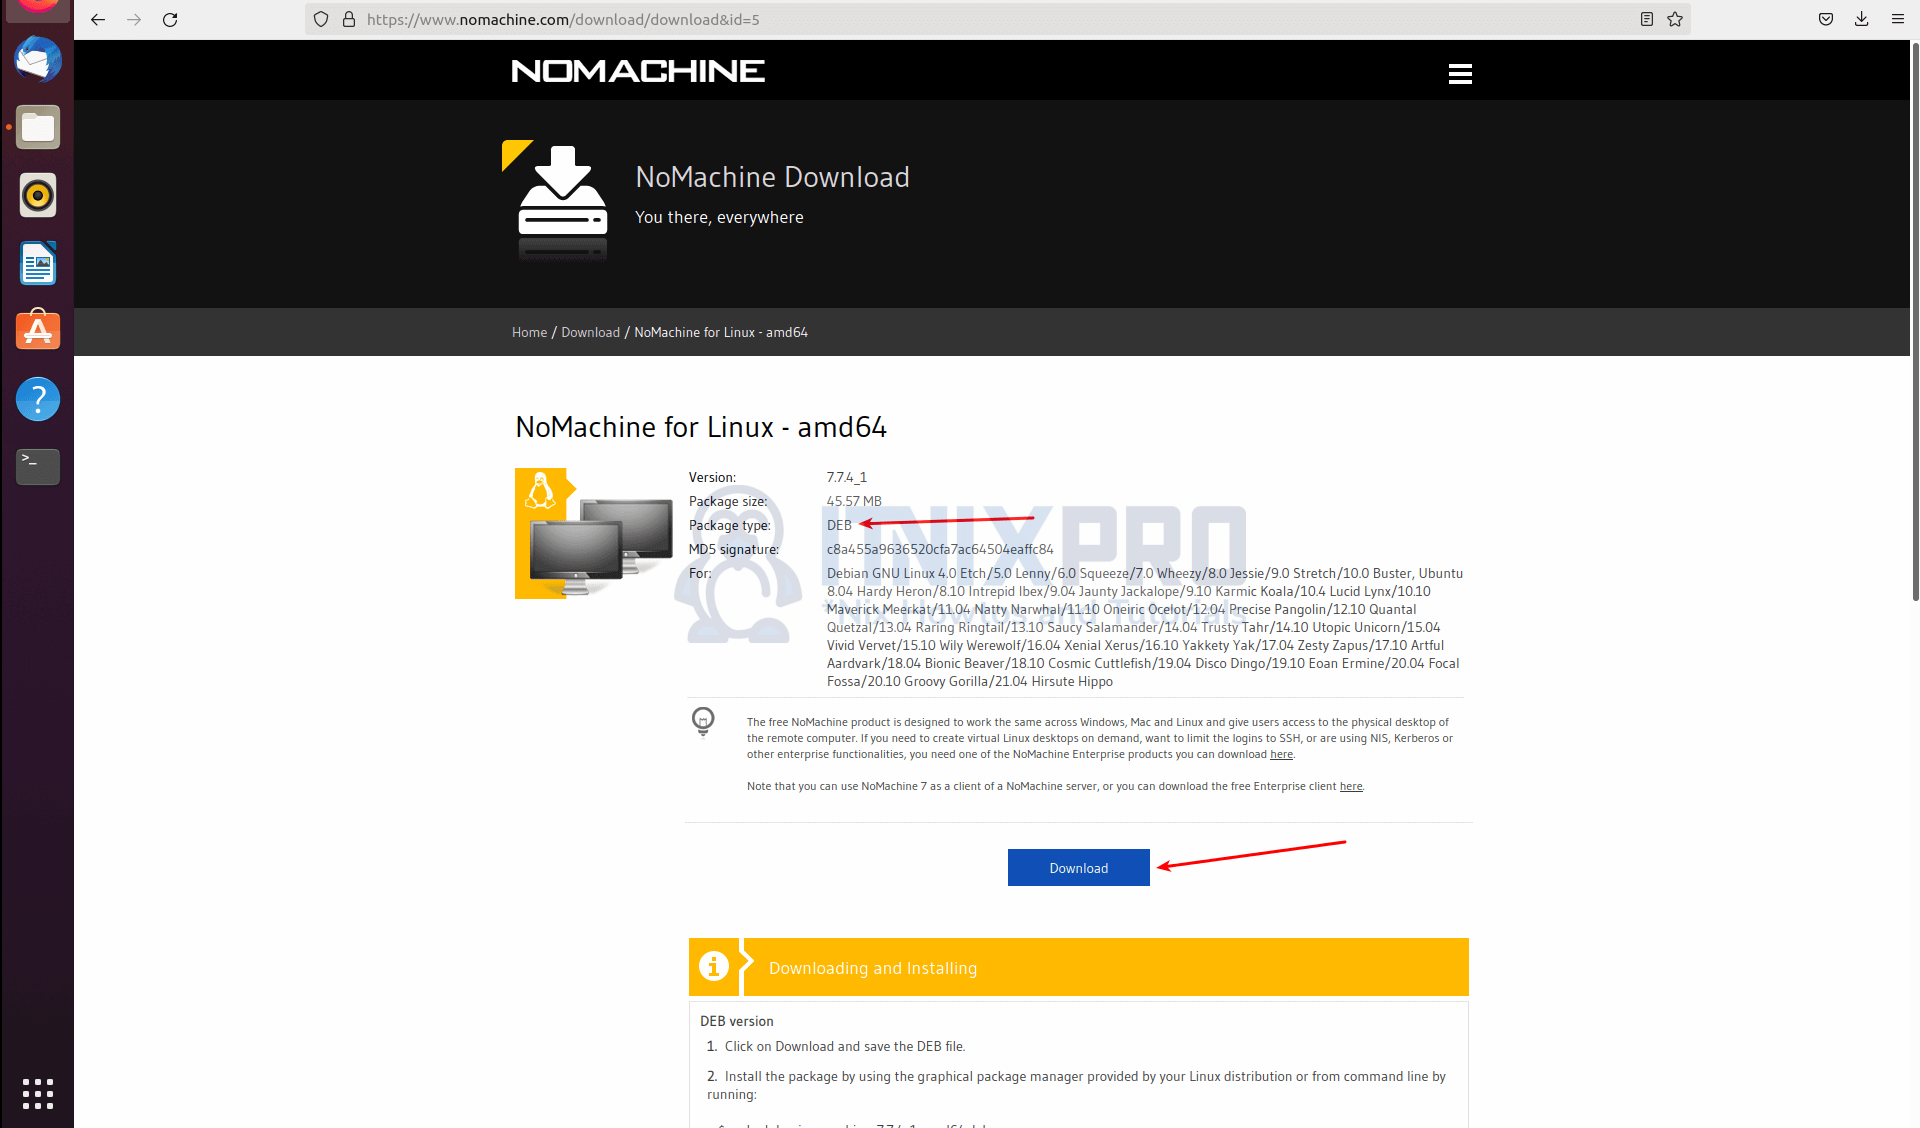 How to install NoMachine on Ubuntu 22.04